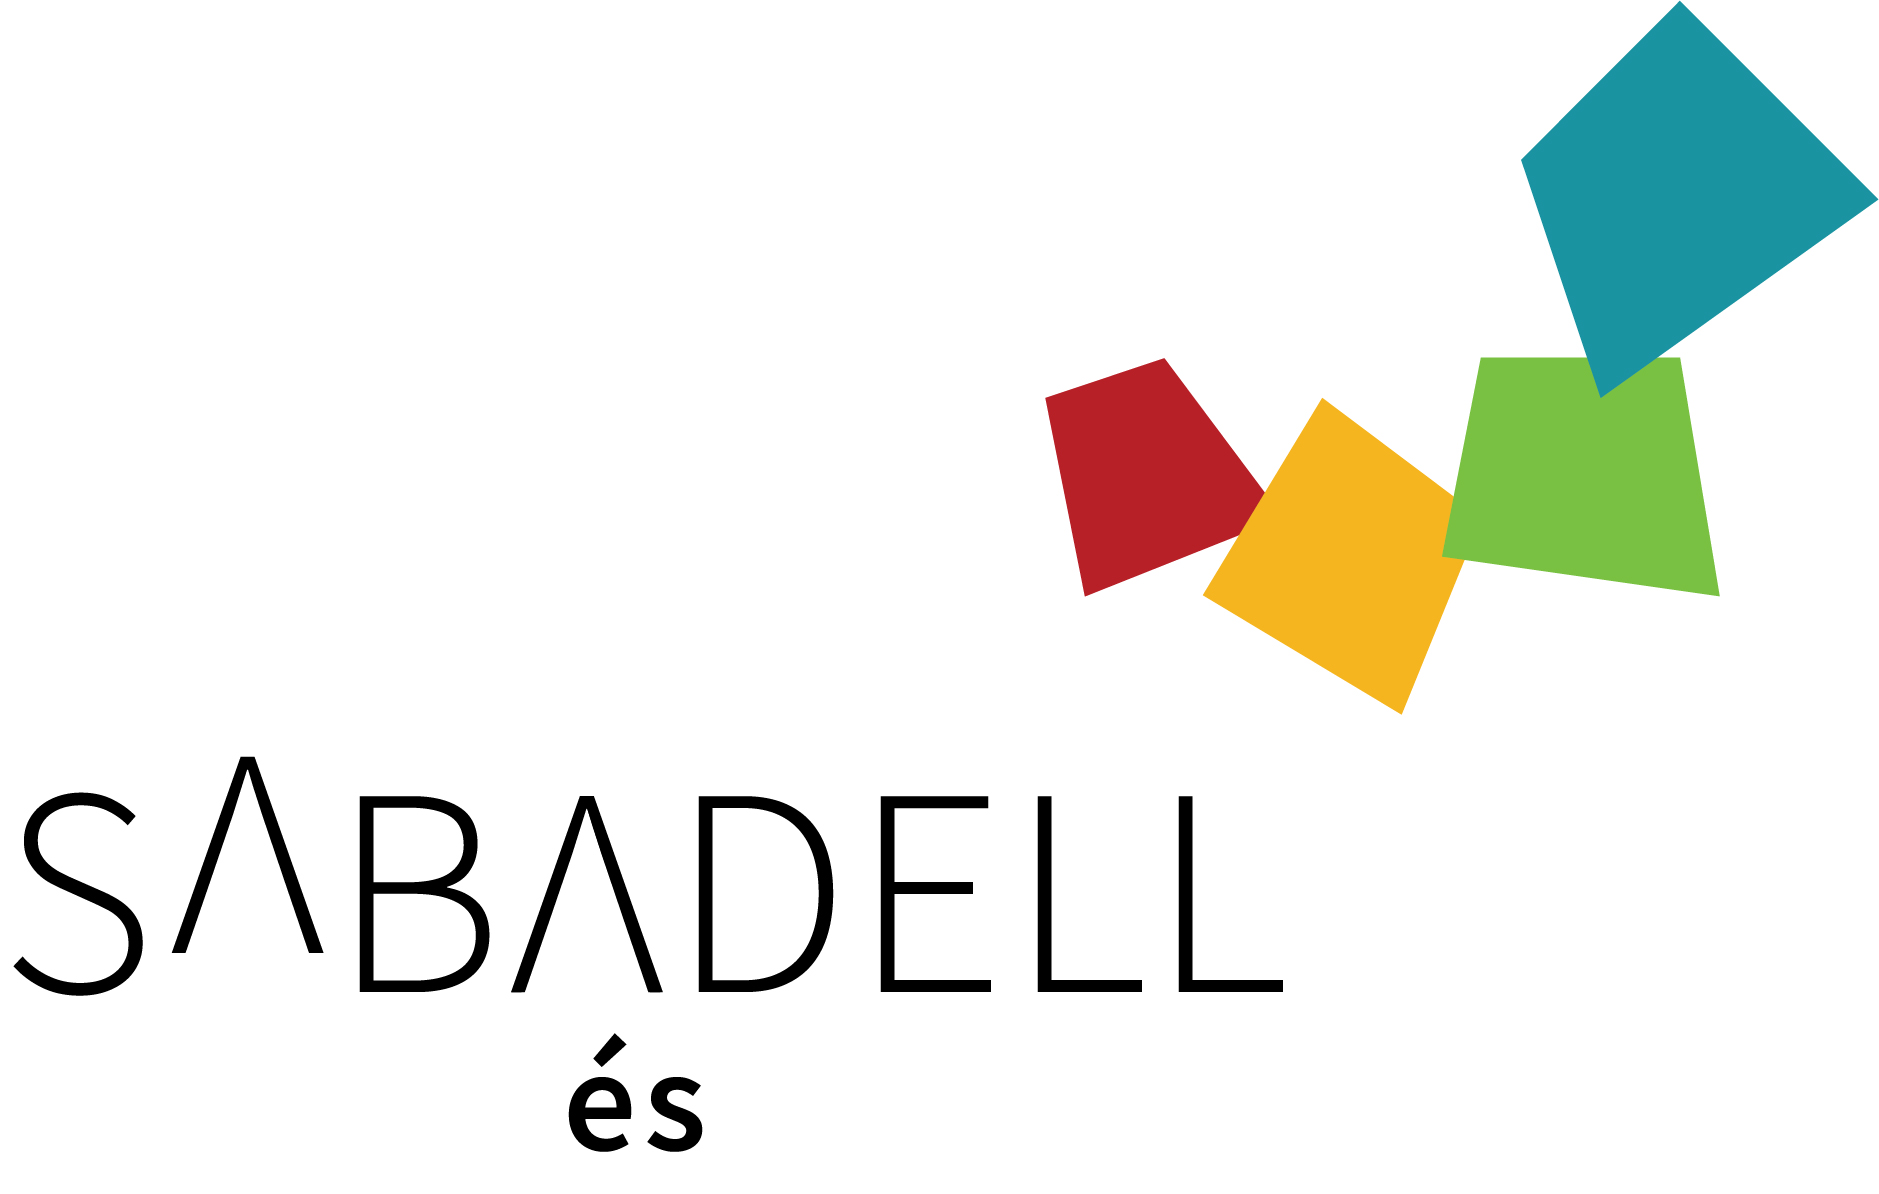 Sabadell impulsa una marca de ciutat per recuperar la seva identitat i orgull i deixar enrere l'ombra de la corrupció